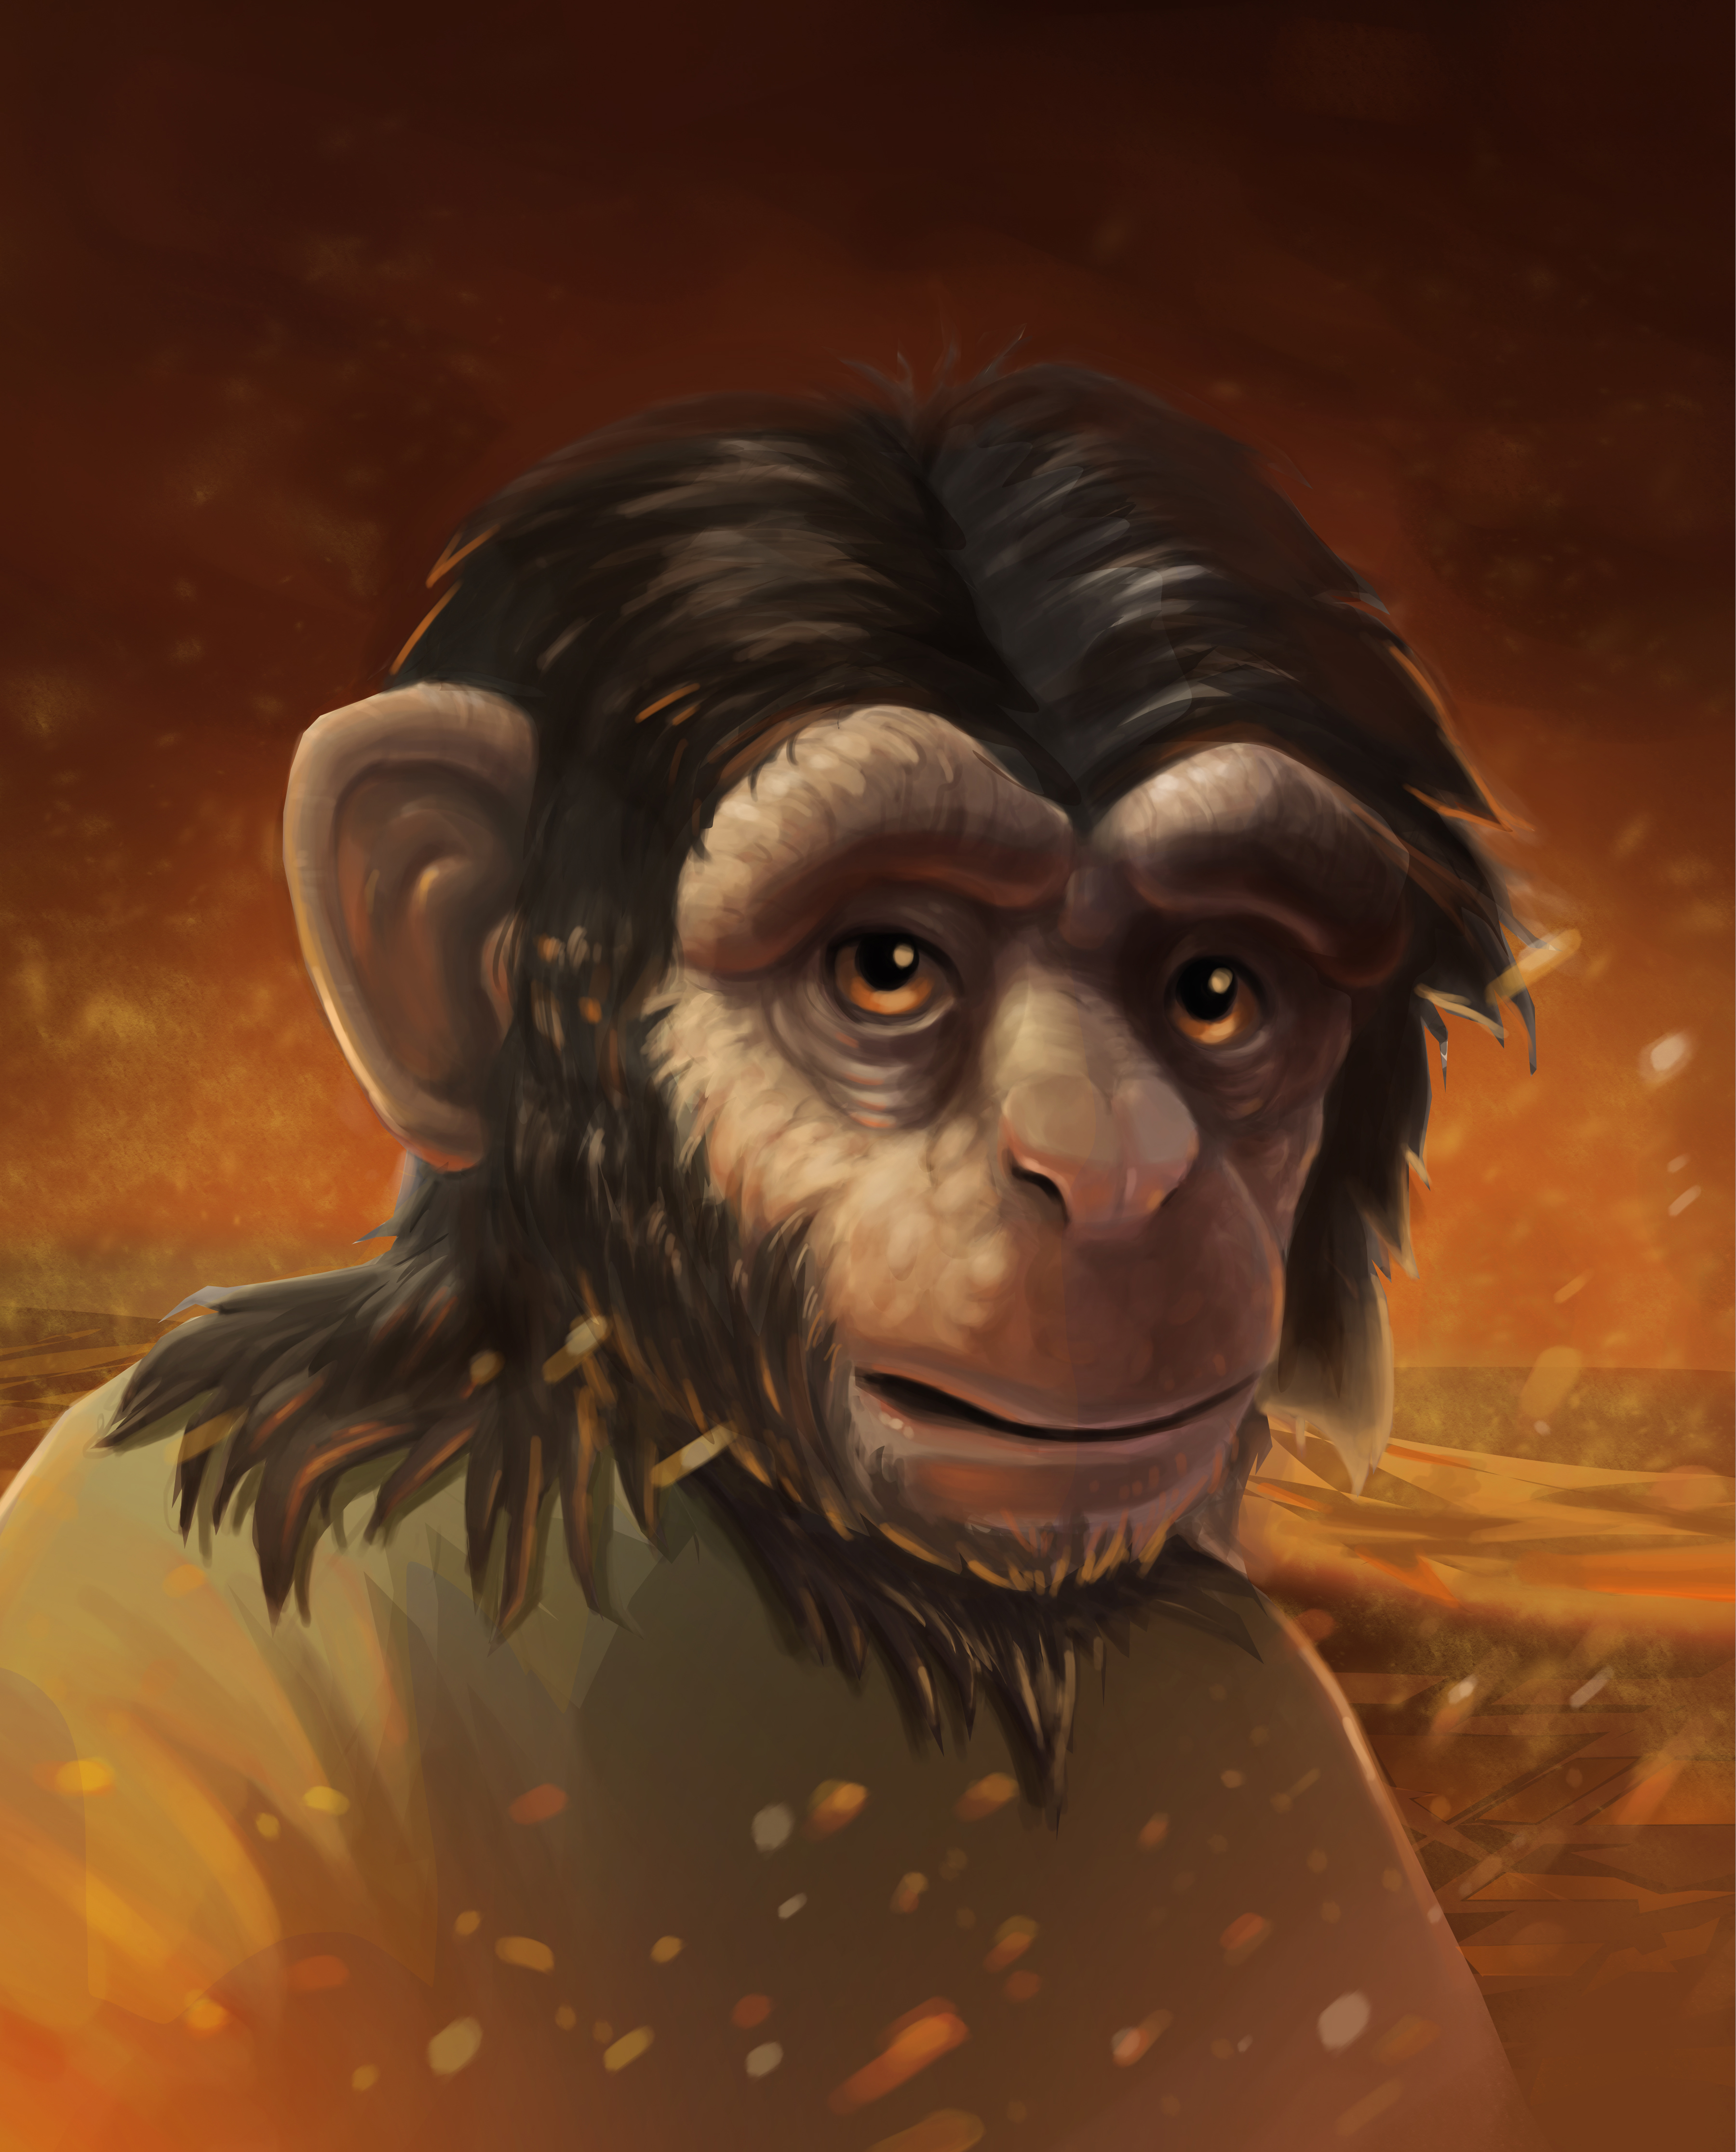 Ape Portrait